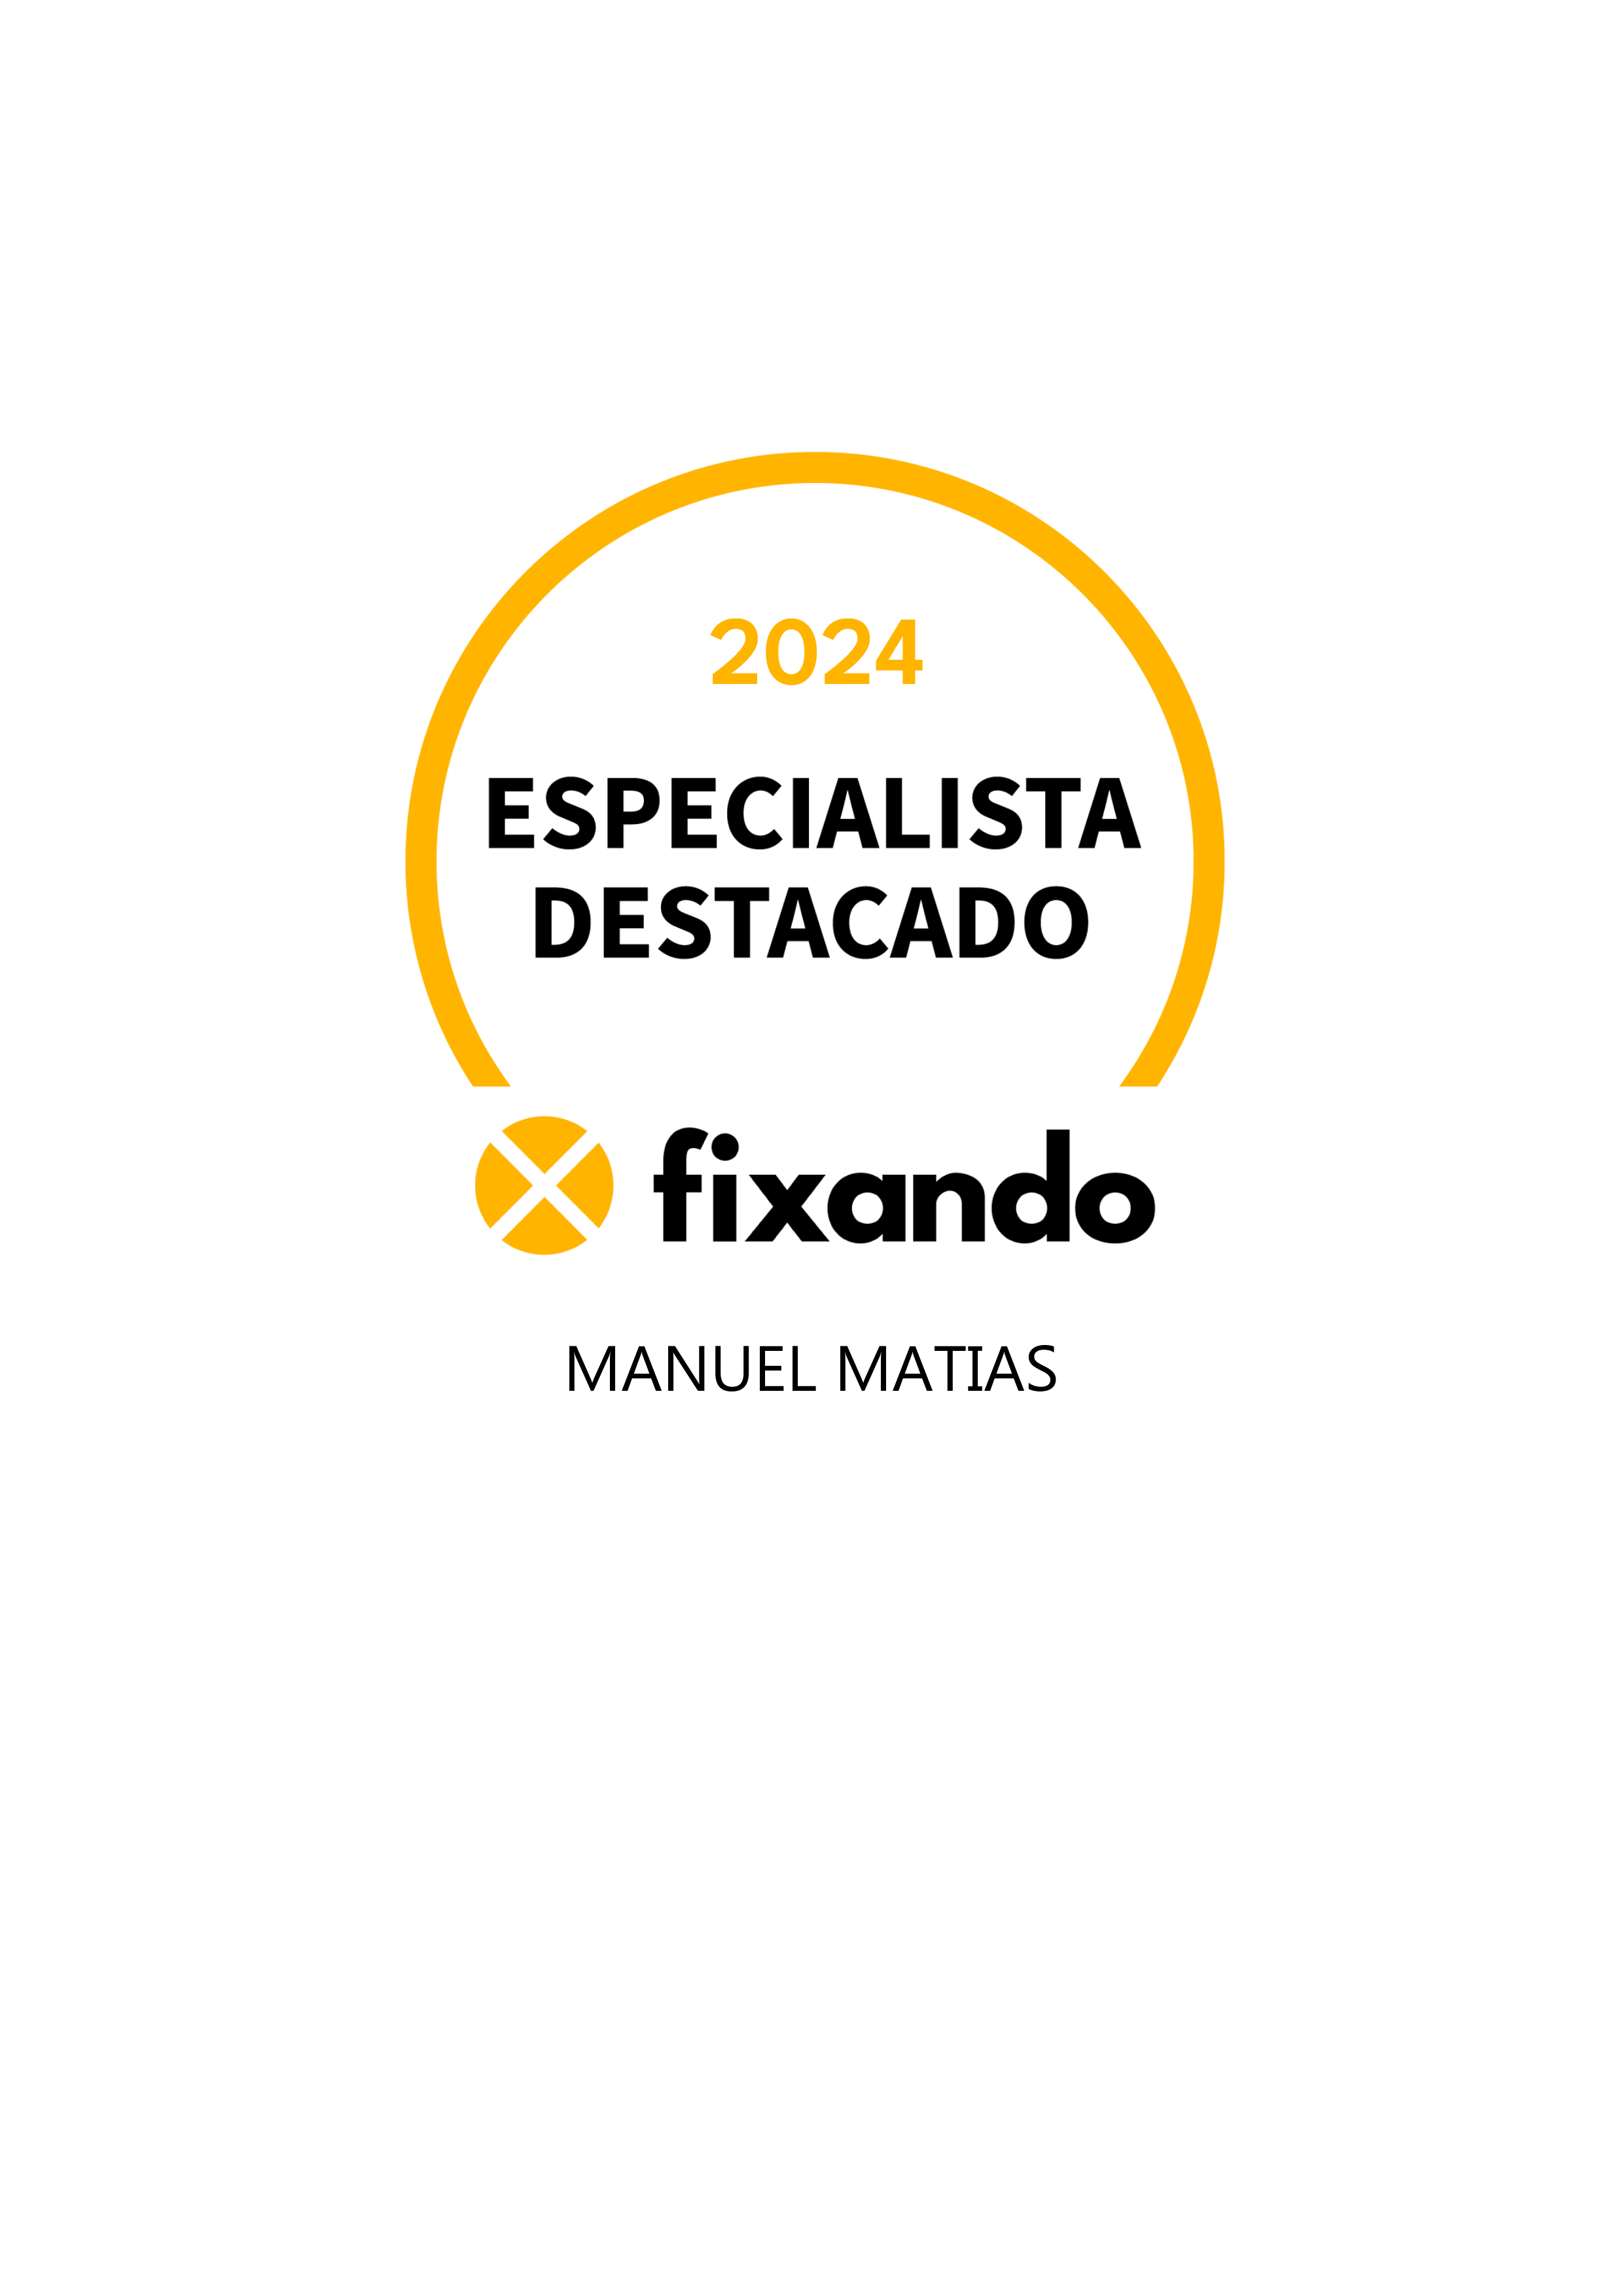 Manuel Matias - Sintra - Remodelação de Cozinhas